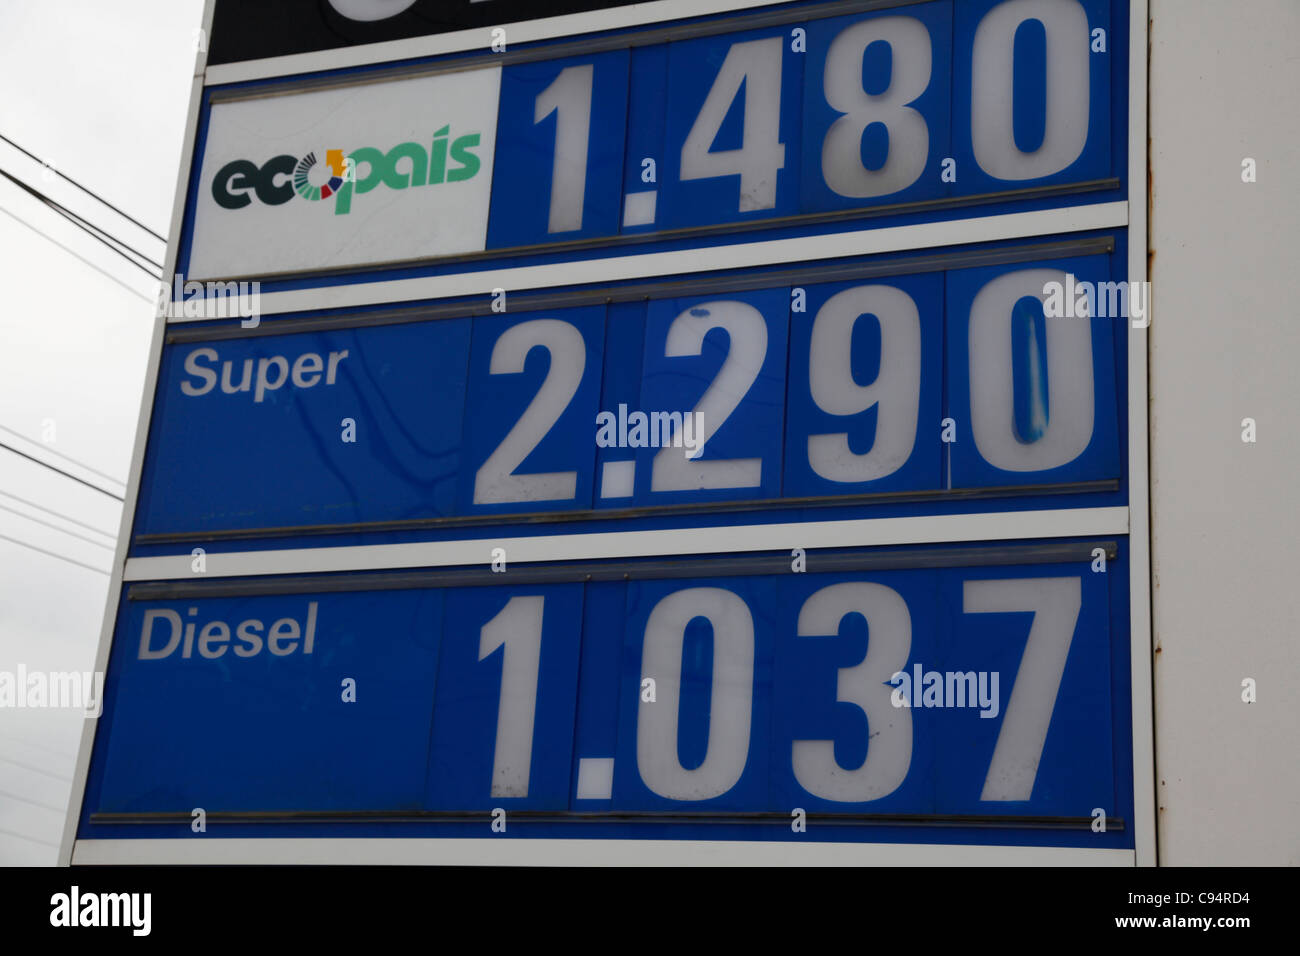 Ecuador. Tankstelle mit Preis für US-Gallone in US-Dollar. Einer der günstigsten Benzinpreise in der Welt. Stockfoto